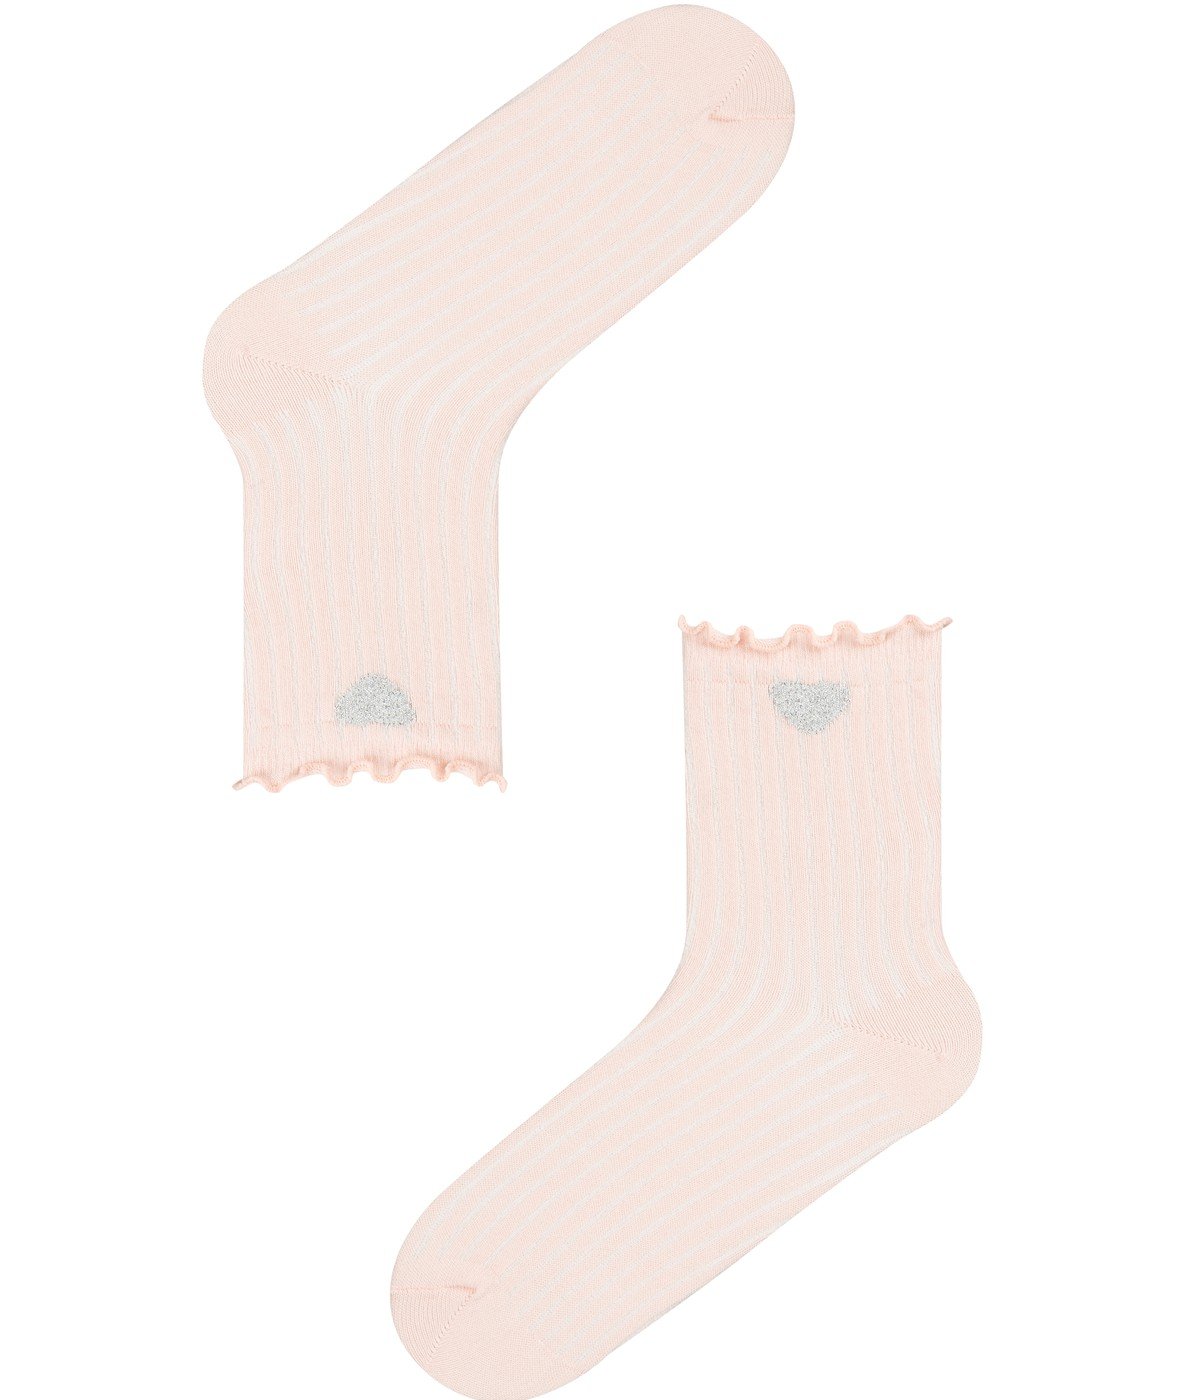 Pg Heart 2in1 Socks